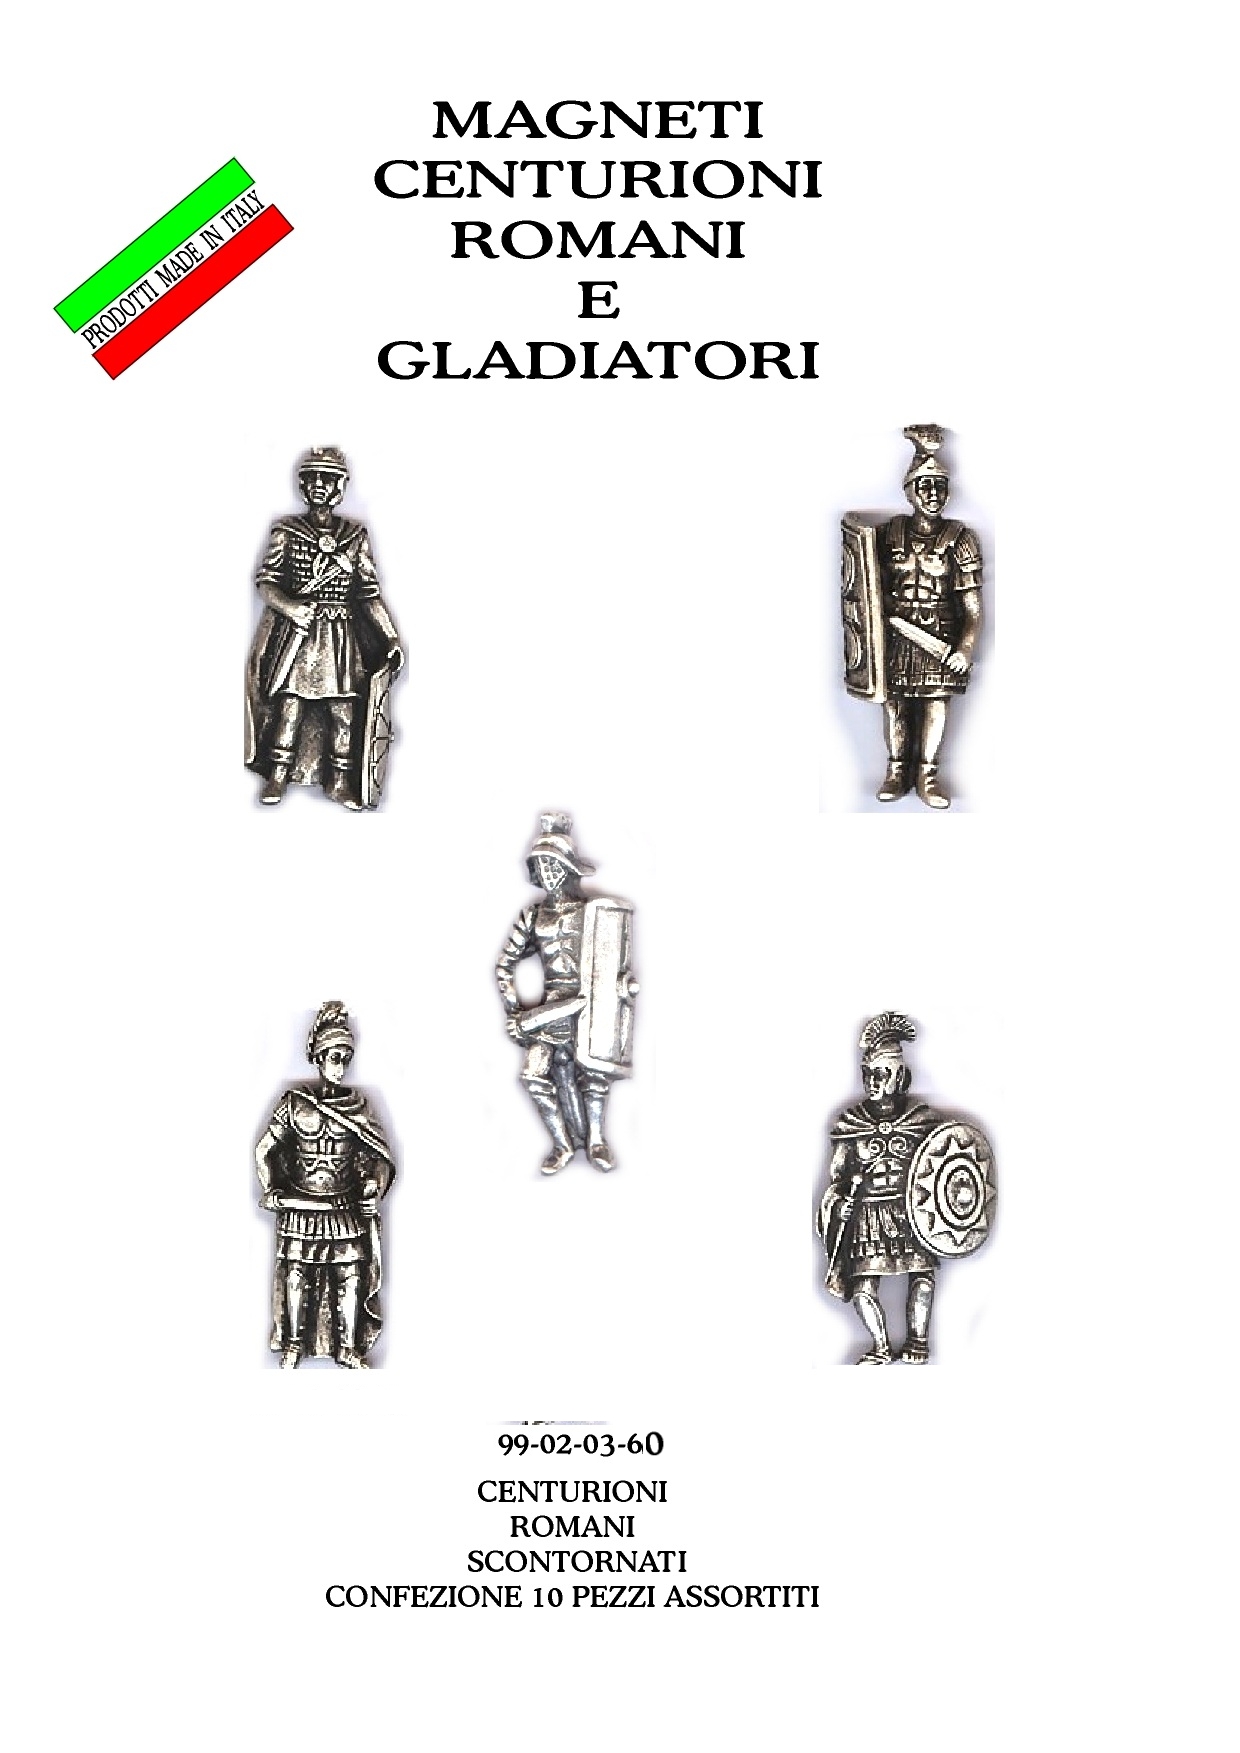 99-02-03-0060 Magneti Centurioni Romani Assortiti CONFEZIONI.da n. 10 Pz.